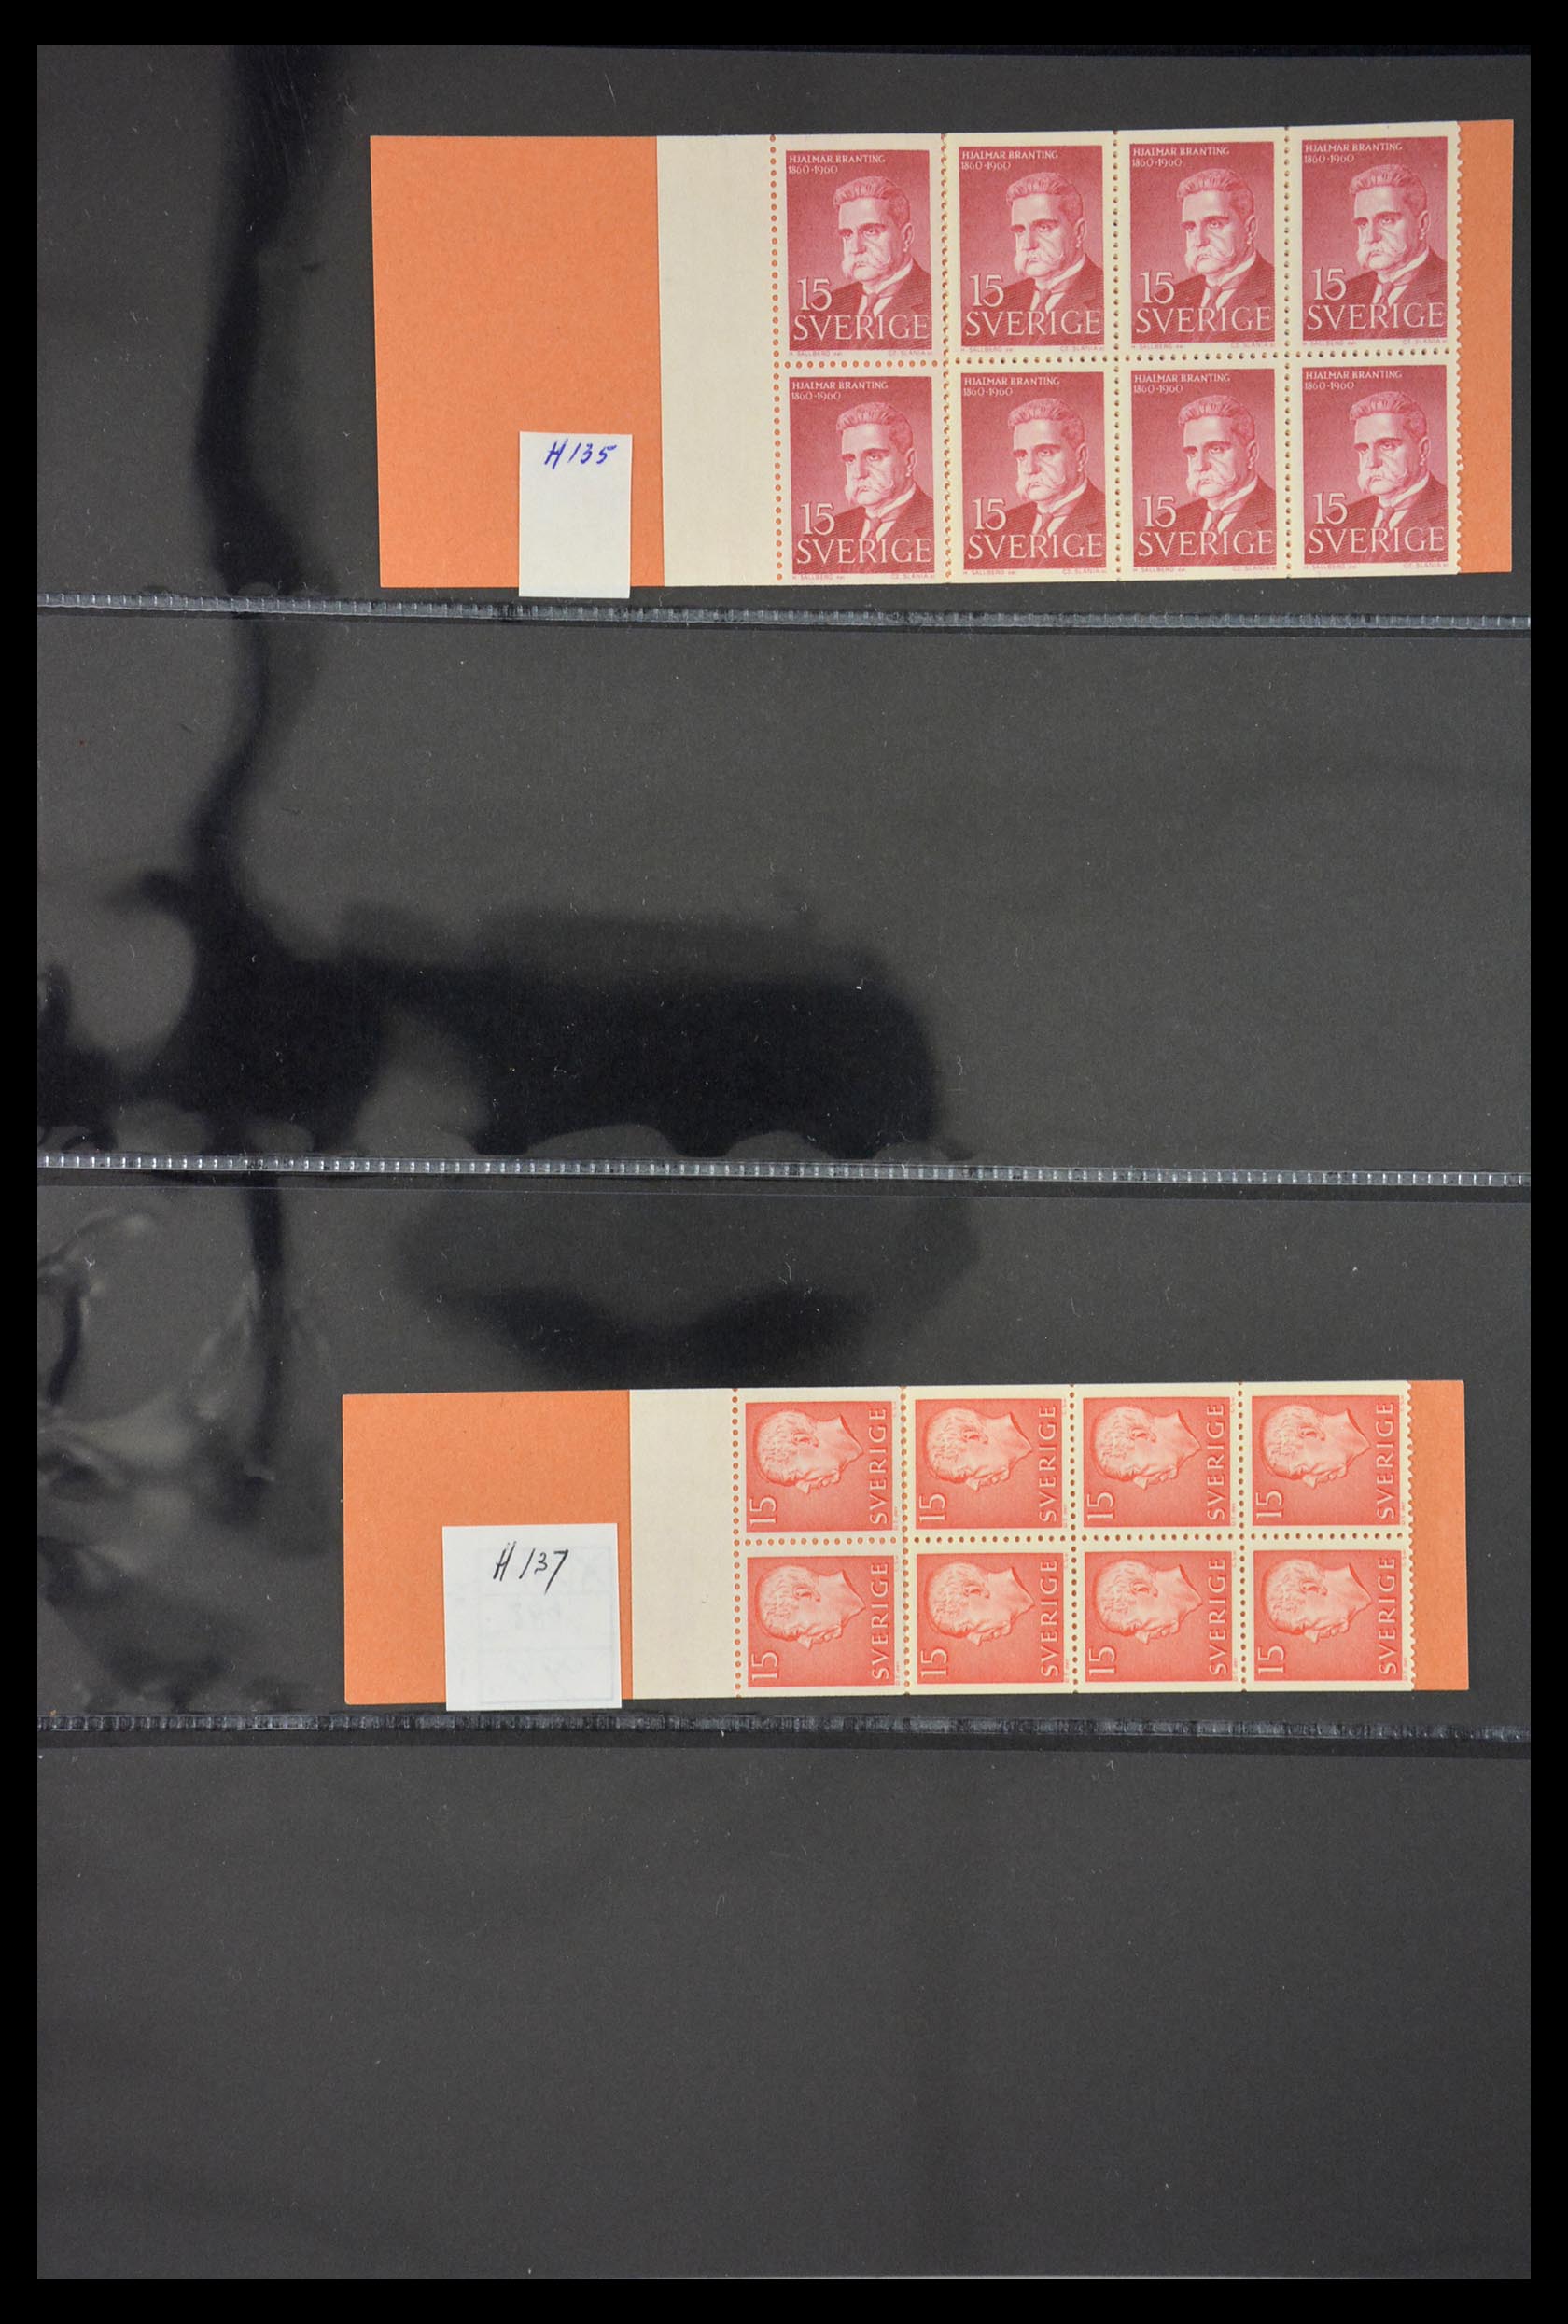 29368 028 - 29368 Sweden stamp booklets 1942-1996.